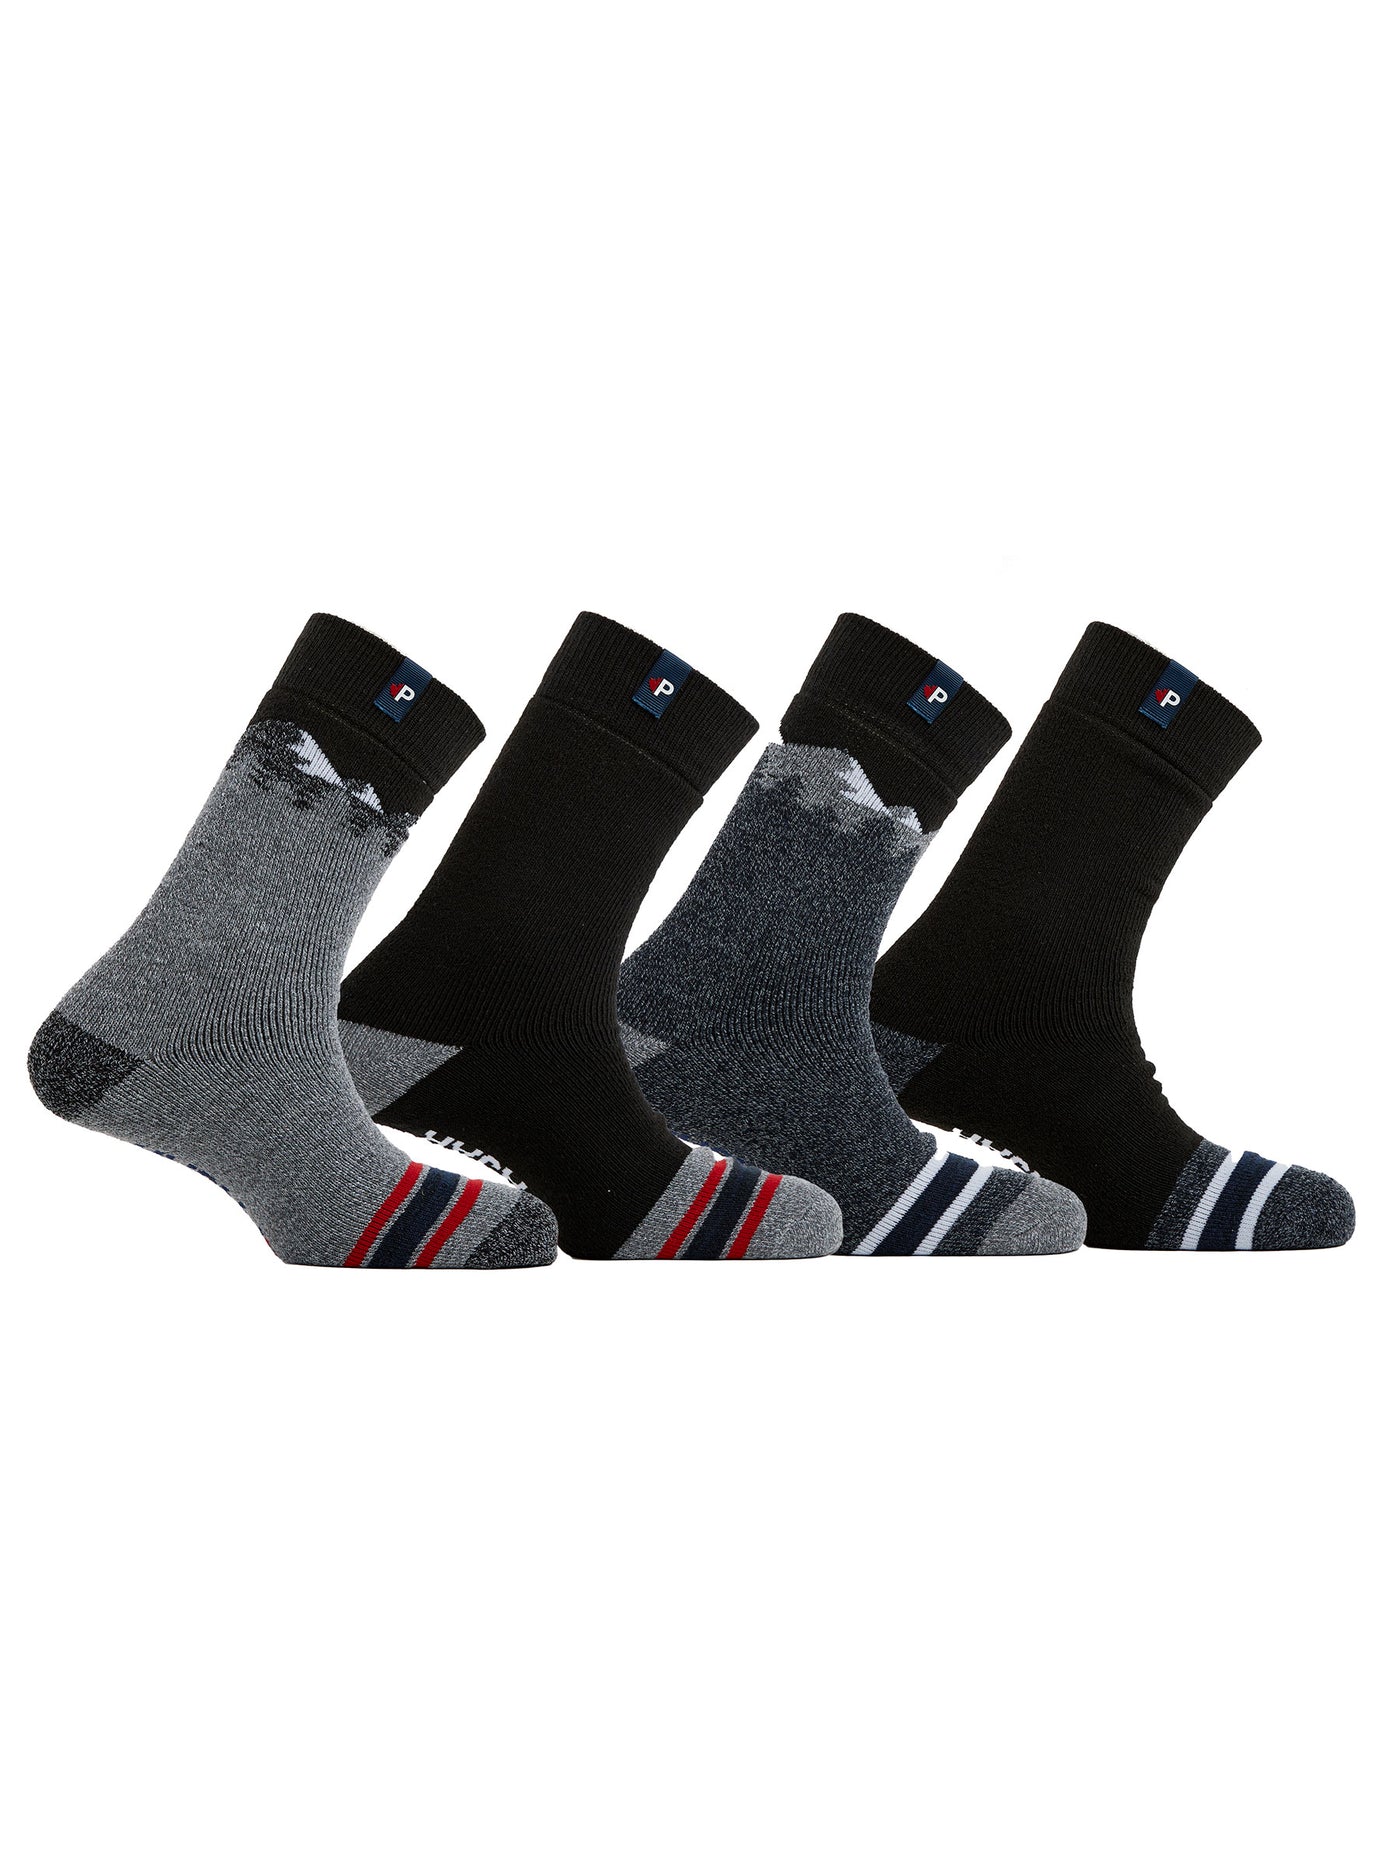 Men's Thermal Crew Socks 4-Pack